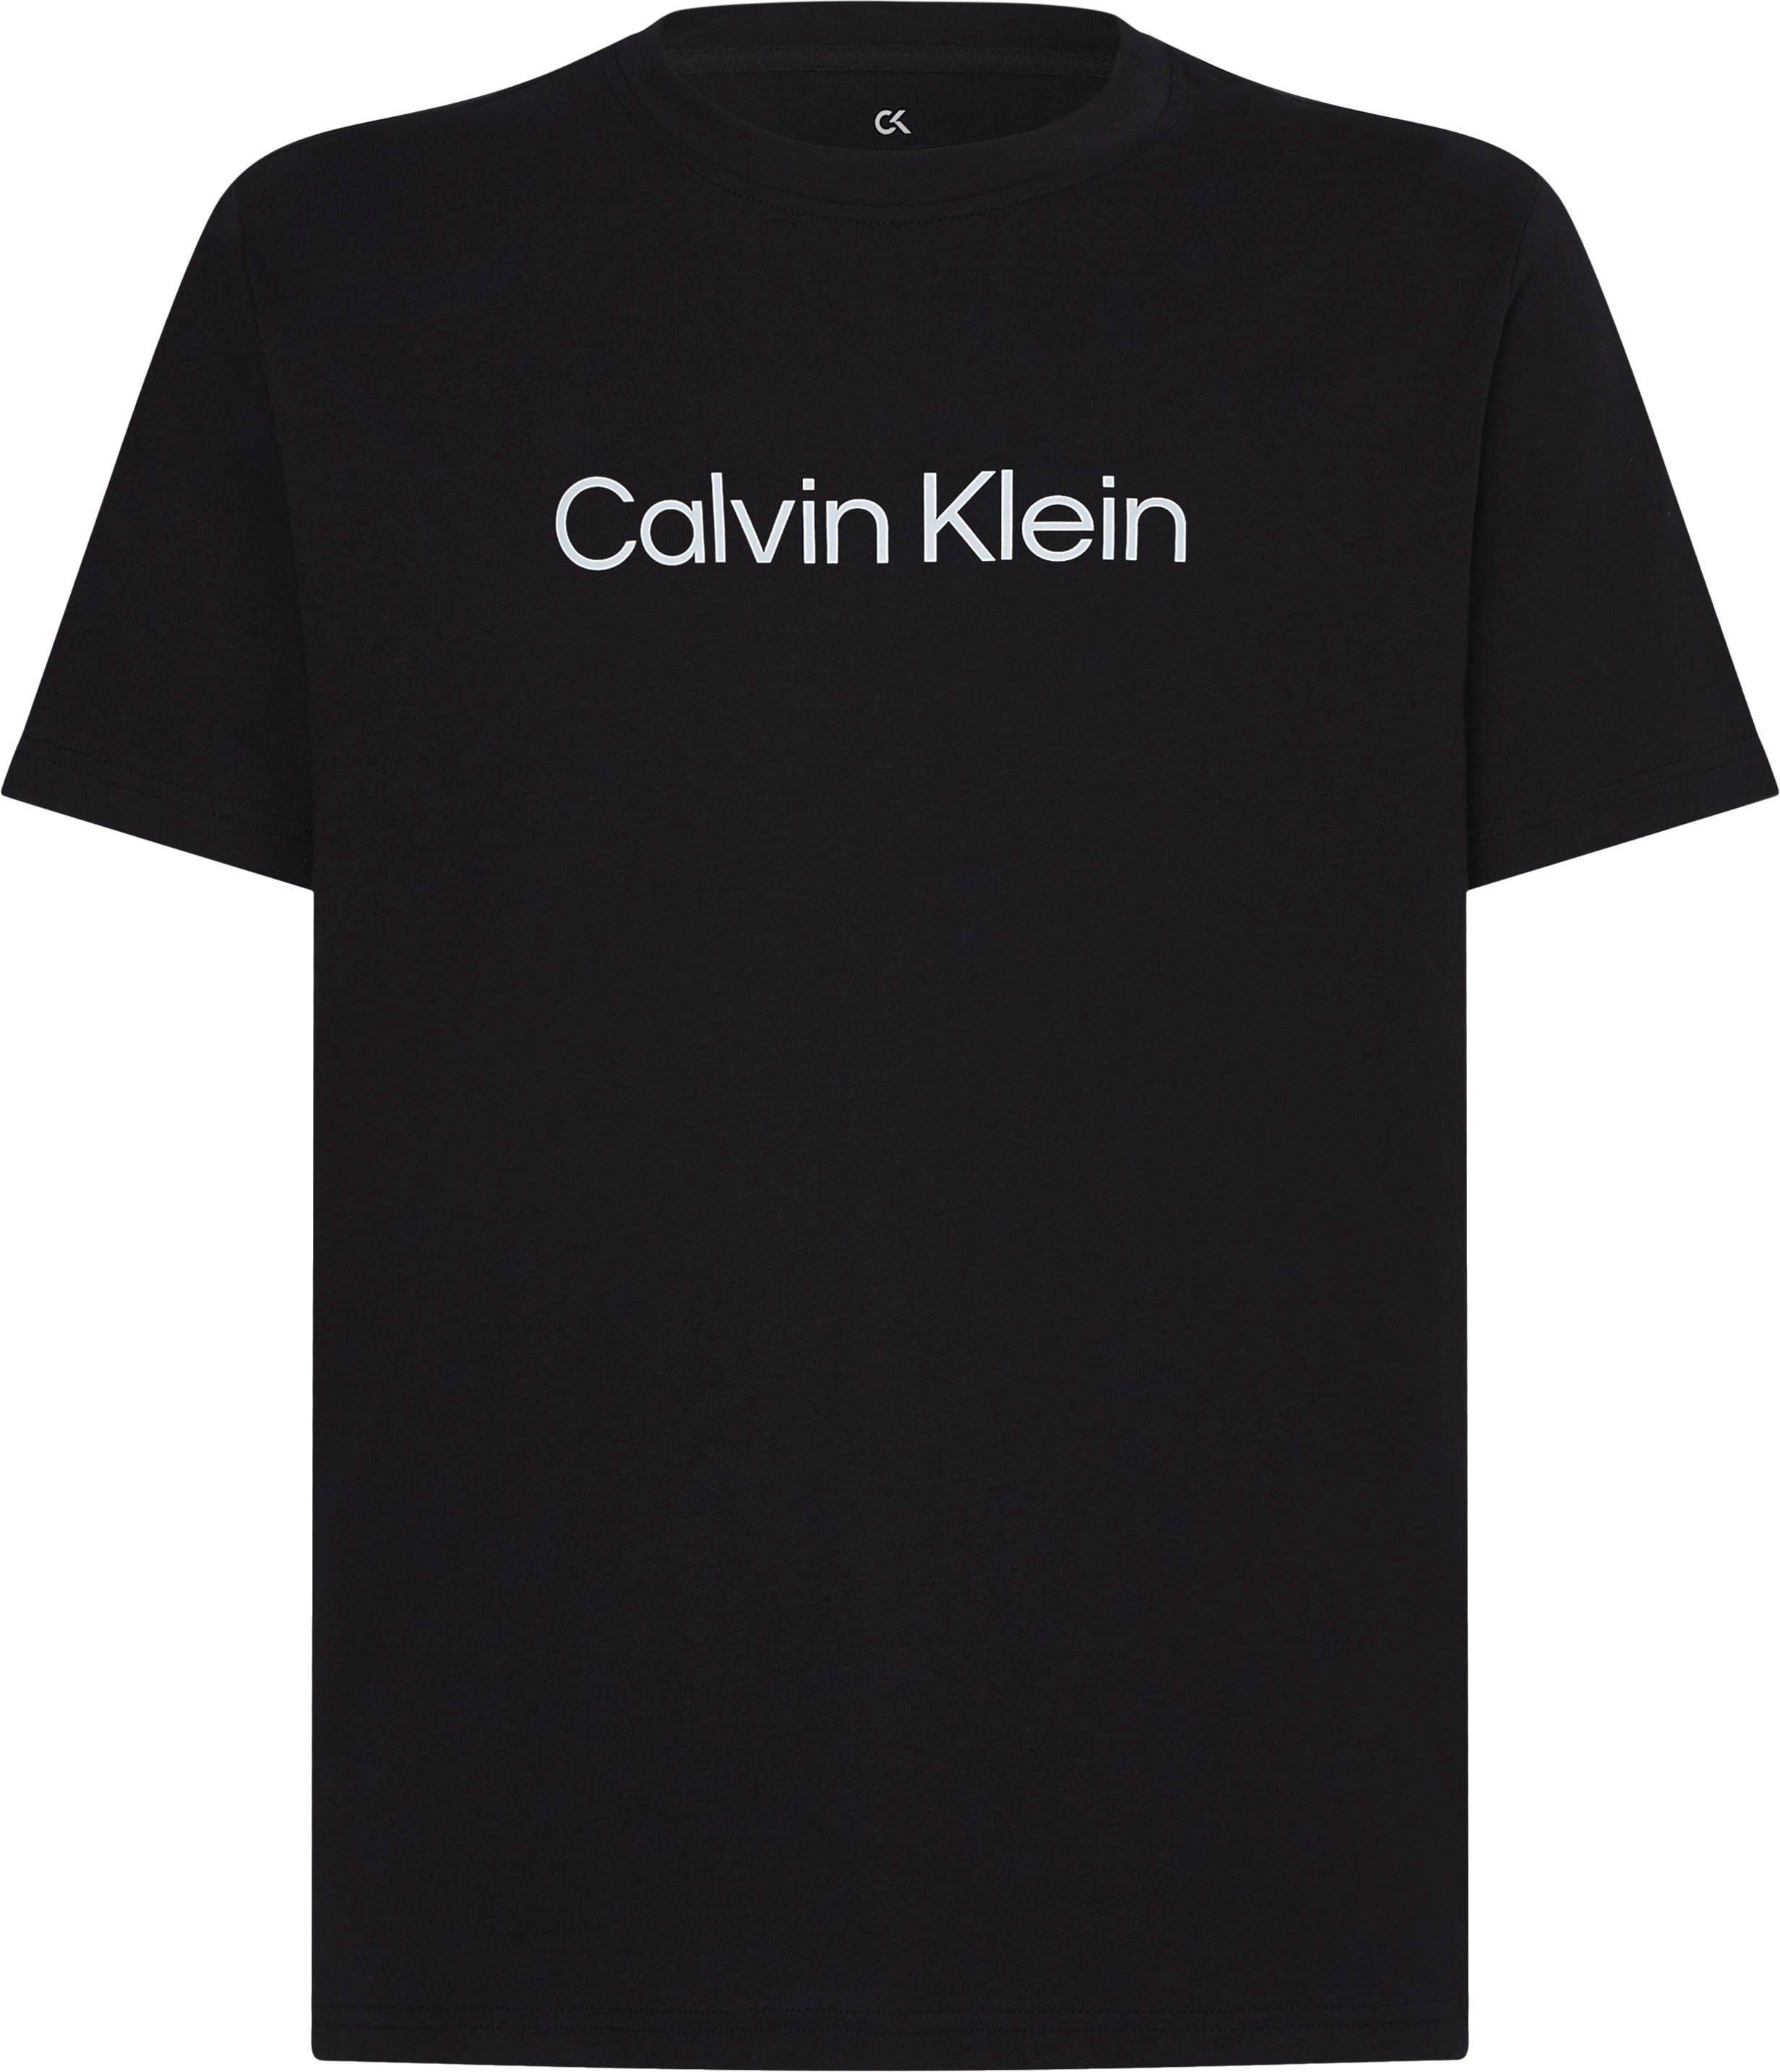 Calvin Klein Sport T-Shirt online kaufen | OTTO